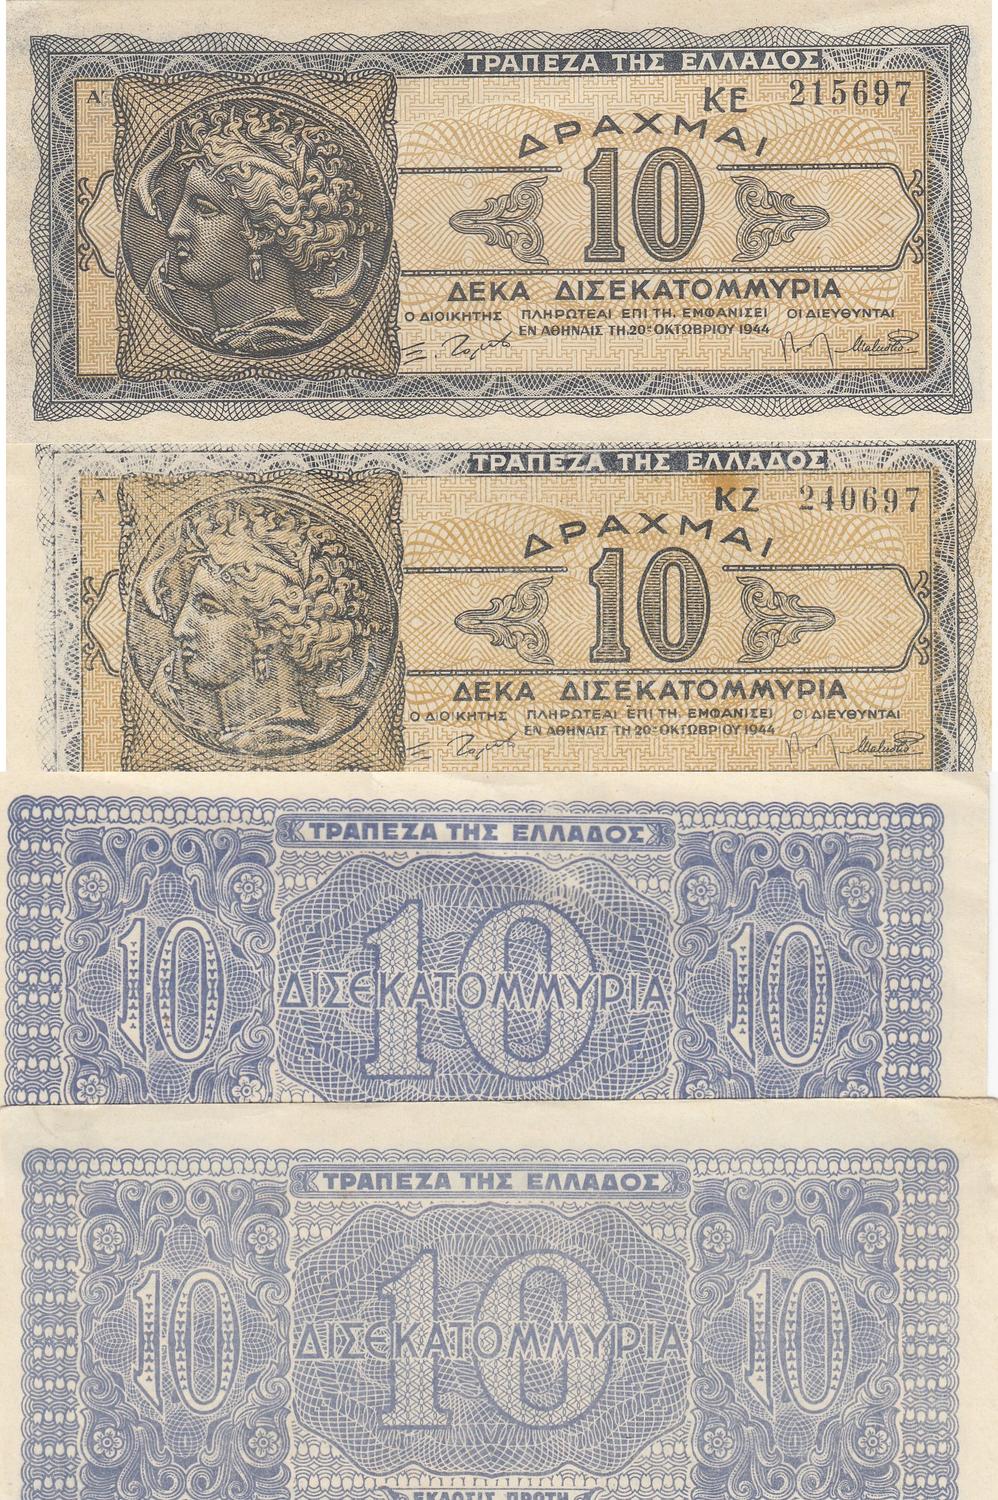 LIBERIA 20 DOLLARS 2004 UNC P.28